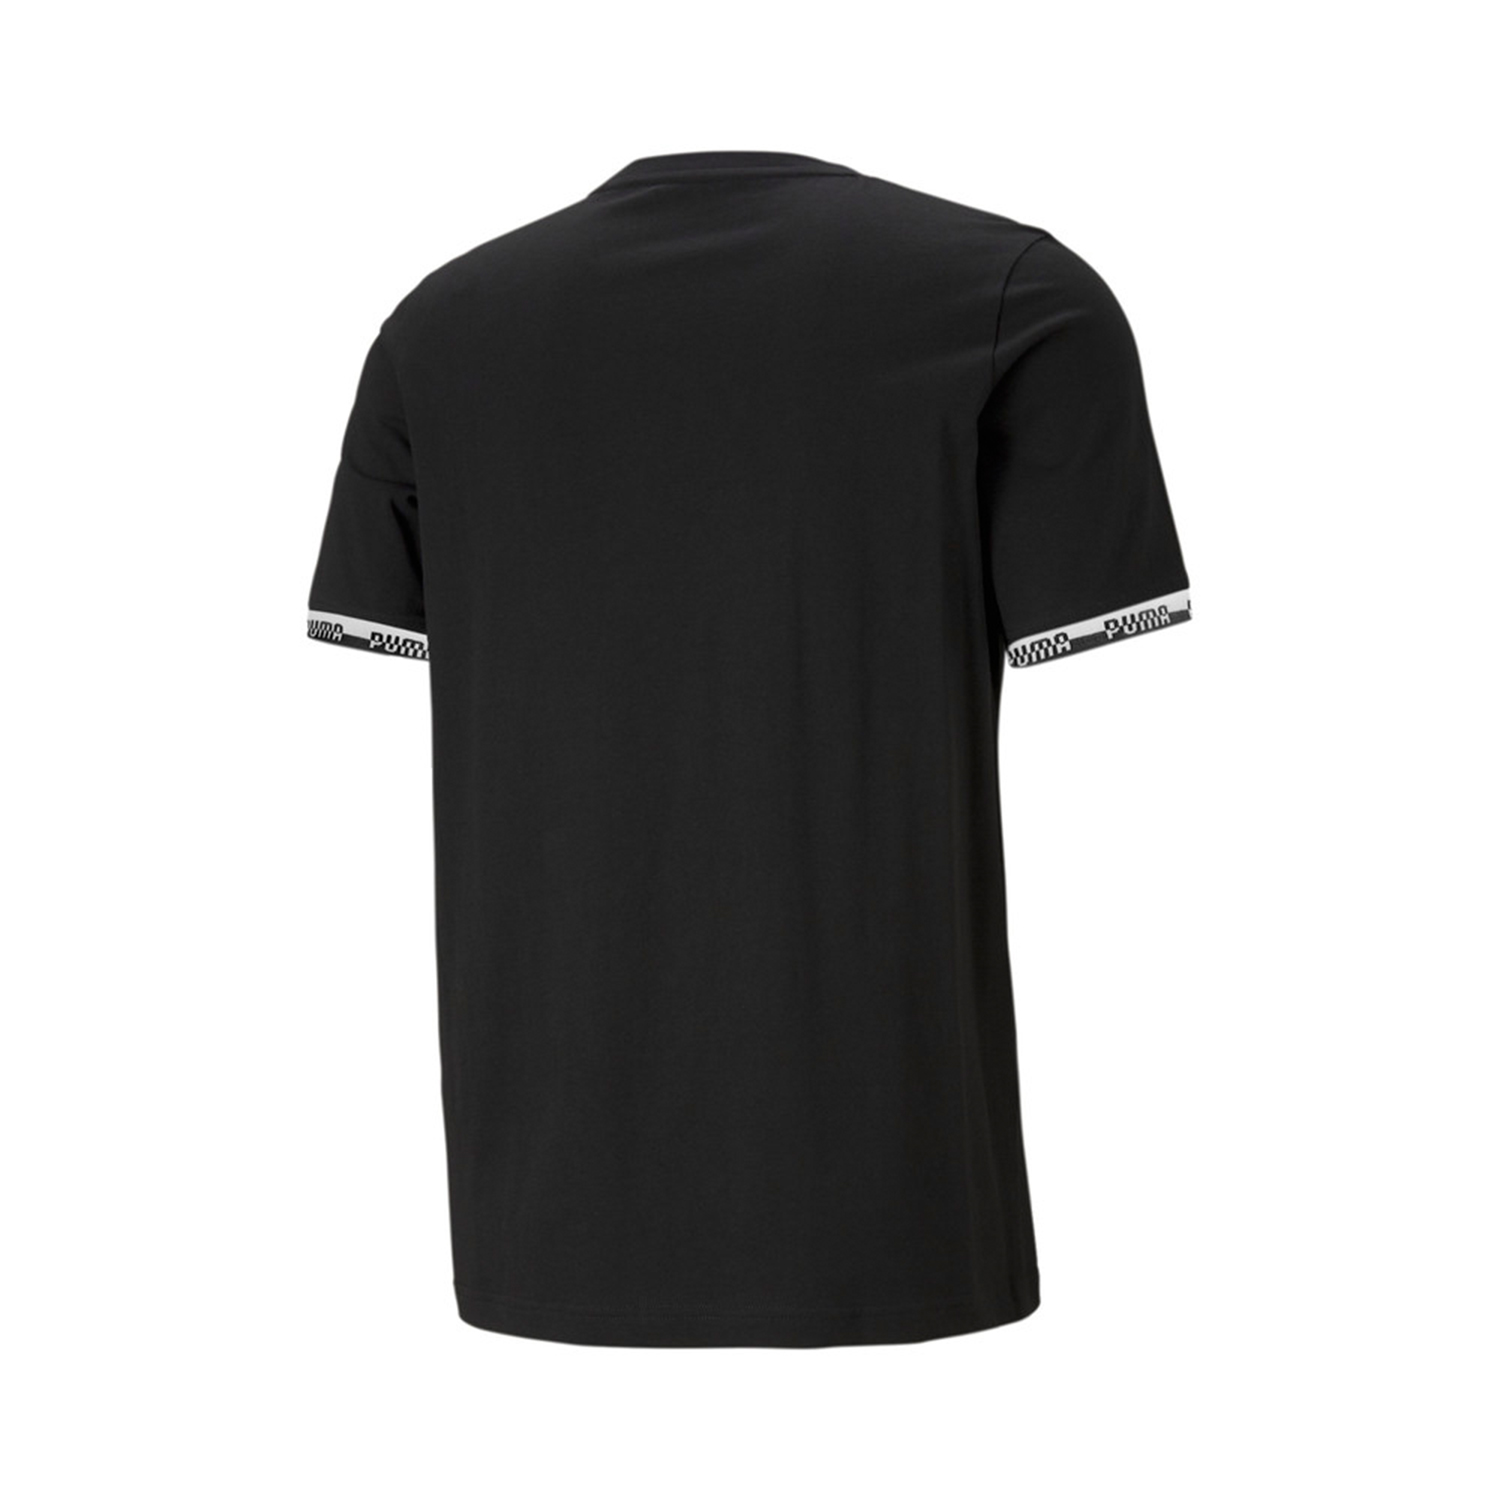 PUMA Herren Amplified Tee T-Shirt schwarz 580426 01 Übergrößen - 4XL